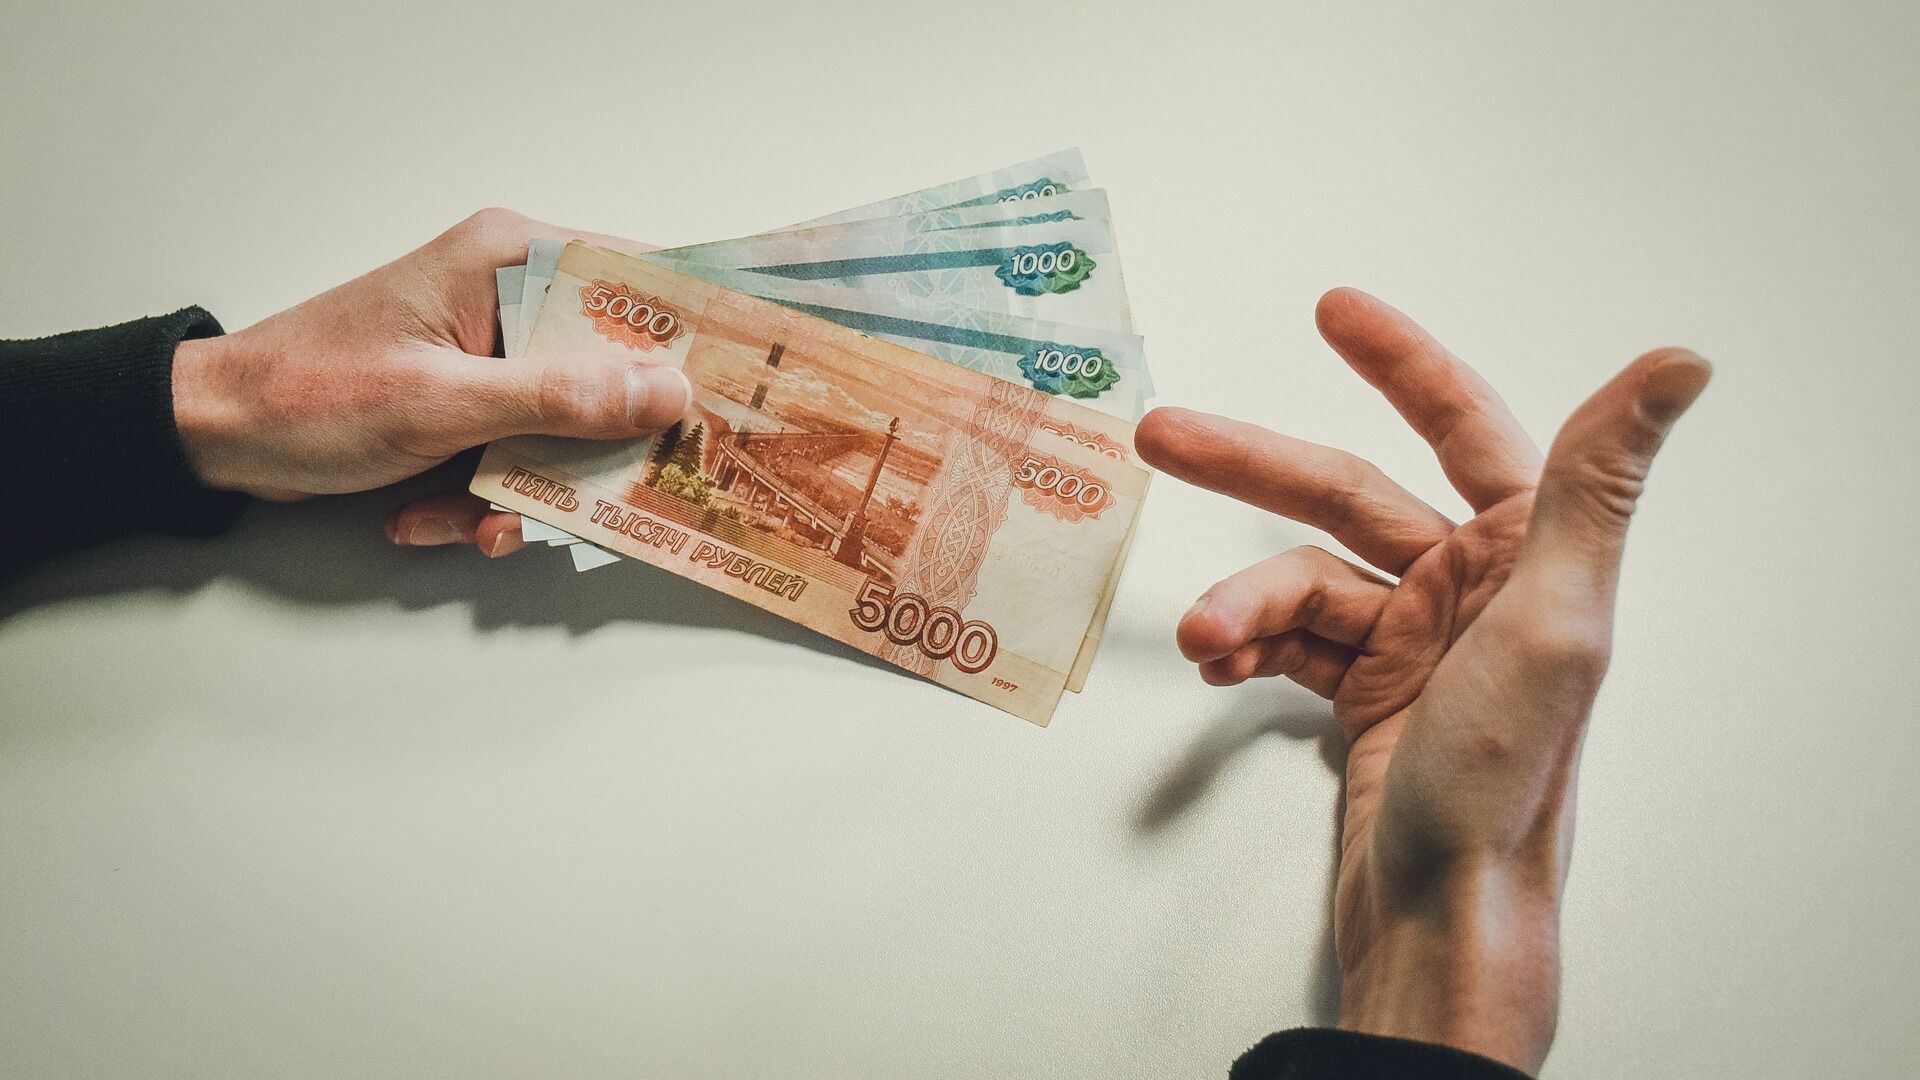 Брачный аферист обманным путем получил более 10 миллионов рублей в Приморье